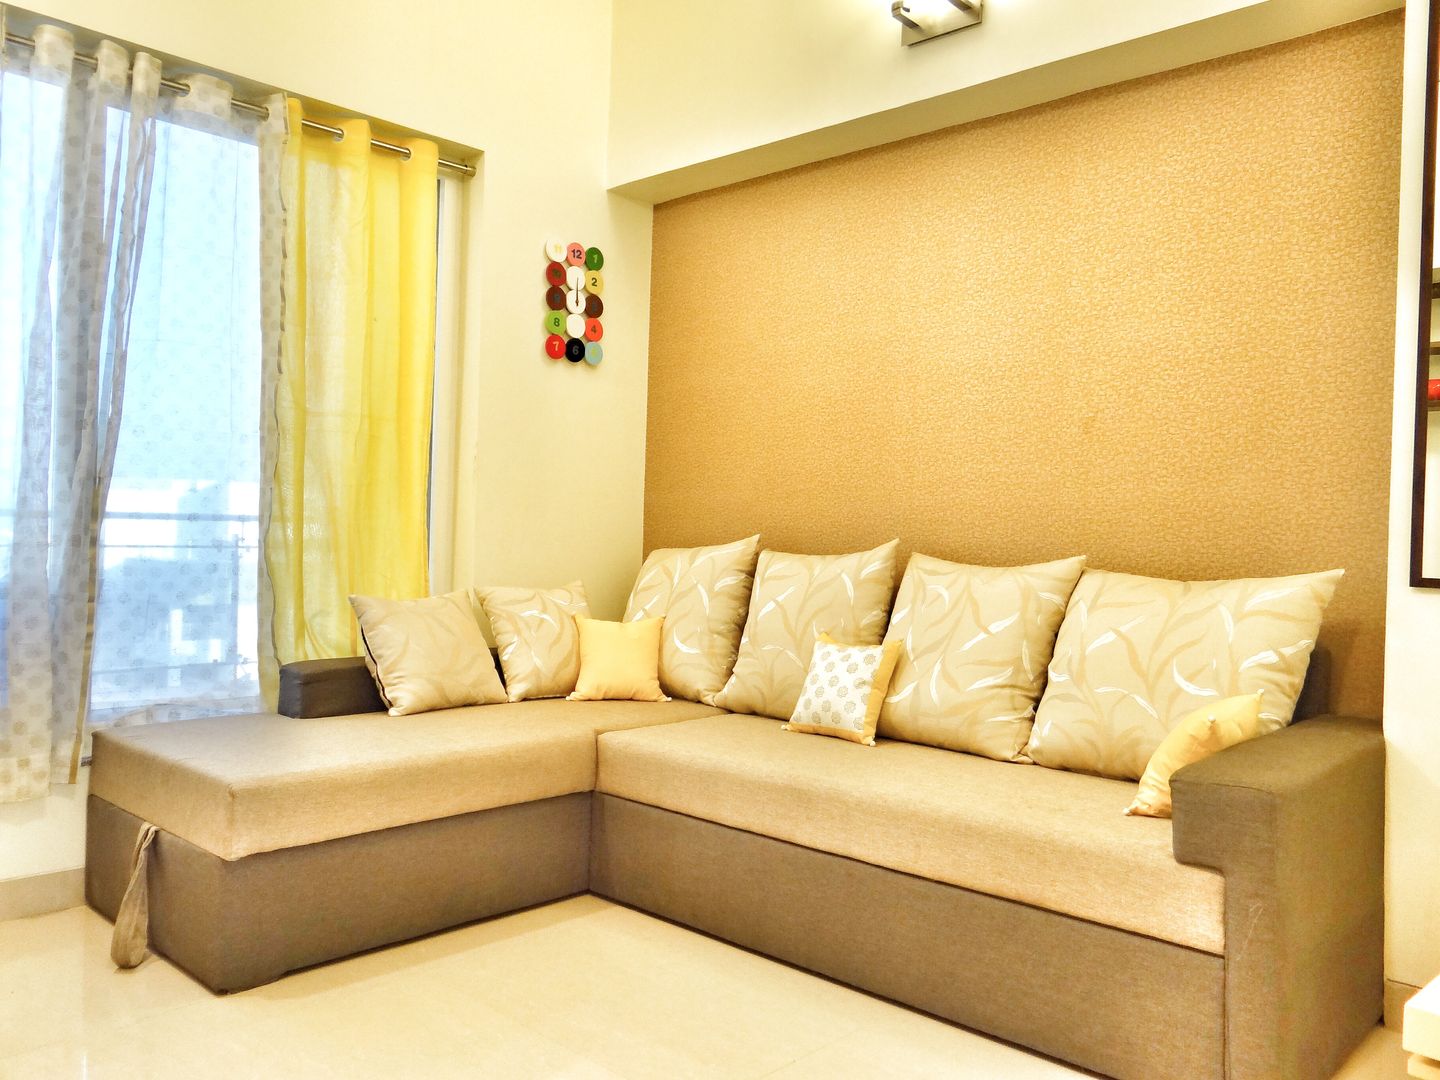 Residence, Nuvo Designs Nuvo Designs Dormitorios de estilo moderno Textil Ámbar/Dorado Sofas y divanes